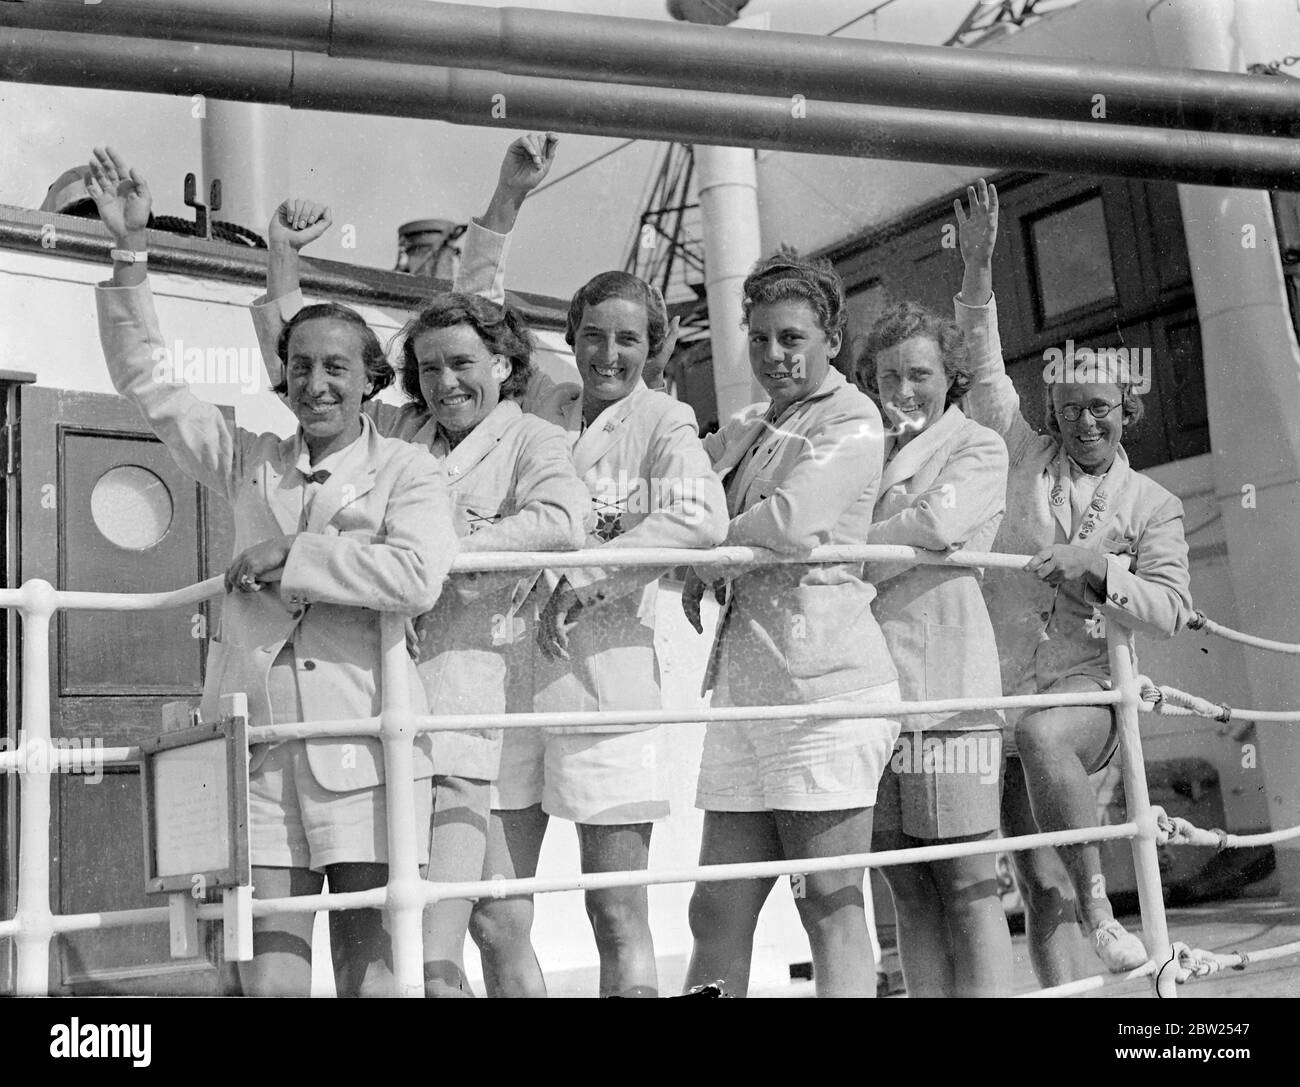 Les filles rames rentrent après une visite non battue de l'Australie. L'équipe de filles d'aviron anglaises est arrivée à Southampton sur le paquebot 'Ormonde' après leur tournée en Australie, au cours de laquelle elles n'ont pas été battues. La photo montre les filles avireuses à l'arrivée à Southampton, de gauche à droite Miss B L Innes, Miss E M Gait, Miss E M Mathewson, Miss A V K Cyriax et Miss P M Taylor. 30 juin 1938 Banque D'Images